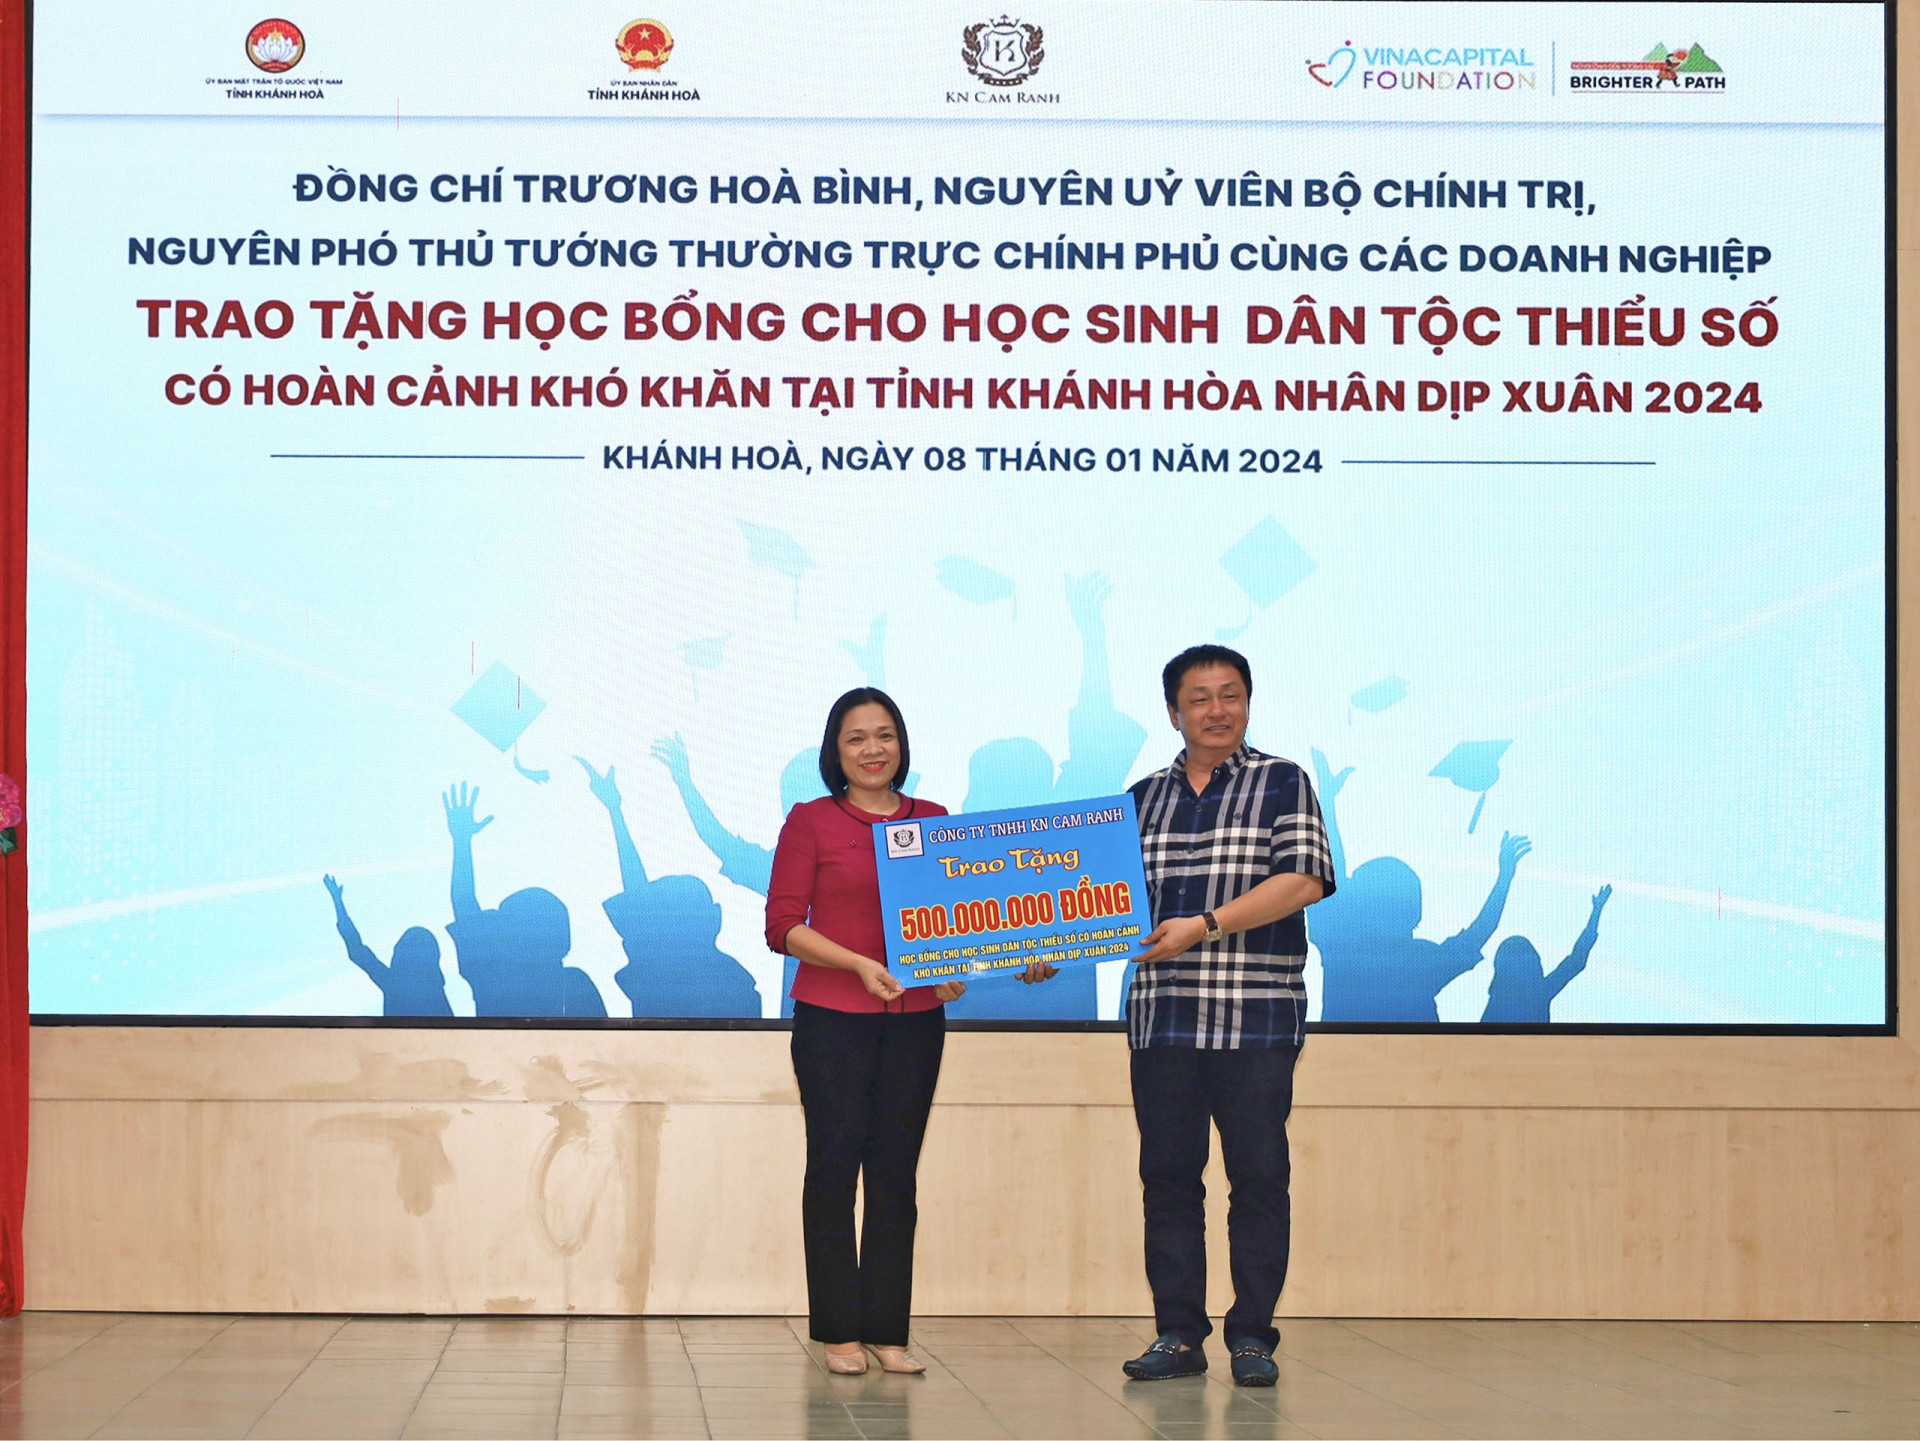 Đại diện Công ty TNHH KN Cam Ranh (bên phải) trao bảng tượng trưng kinh phí hỗ trợ học bổng cho tỉnh Khánh Hòa.